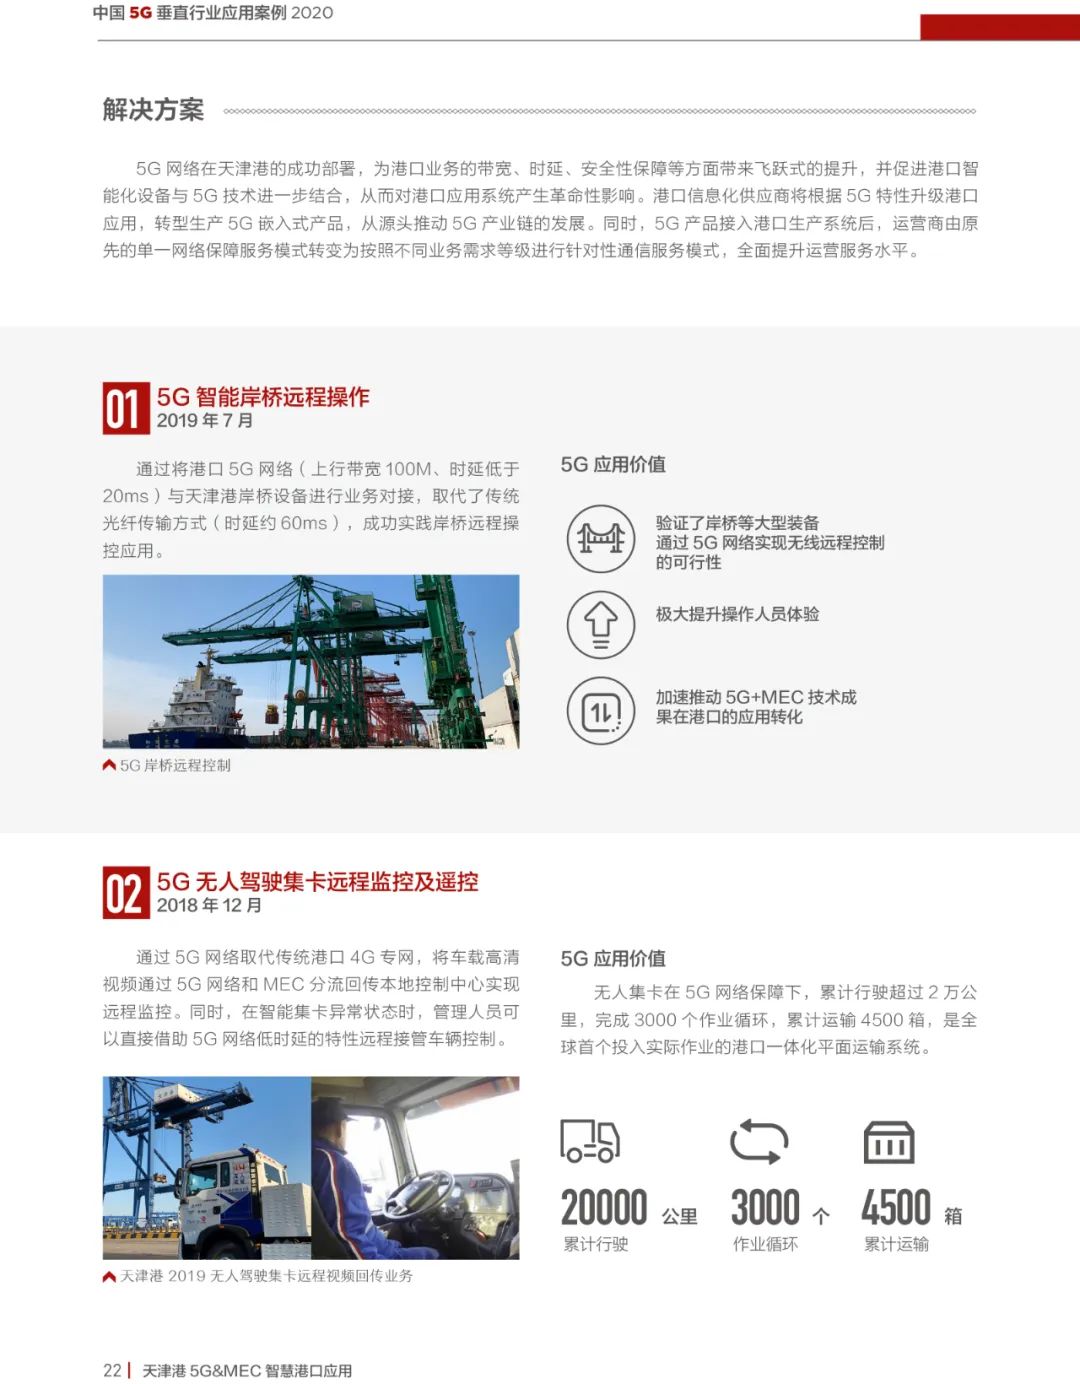 2020中国5G垂直行业应用案例